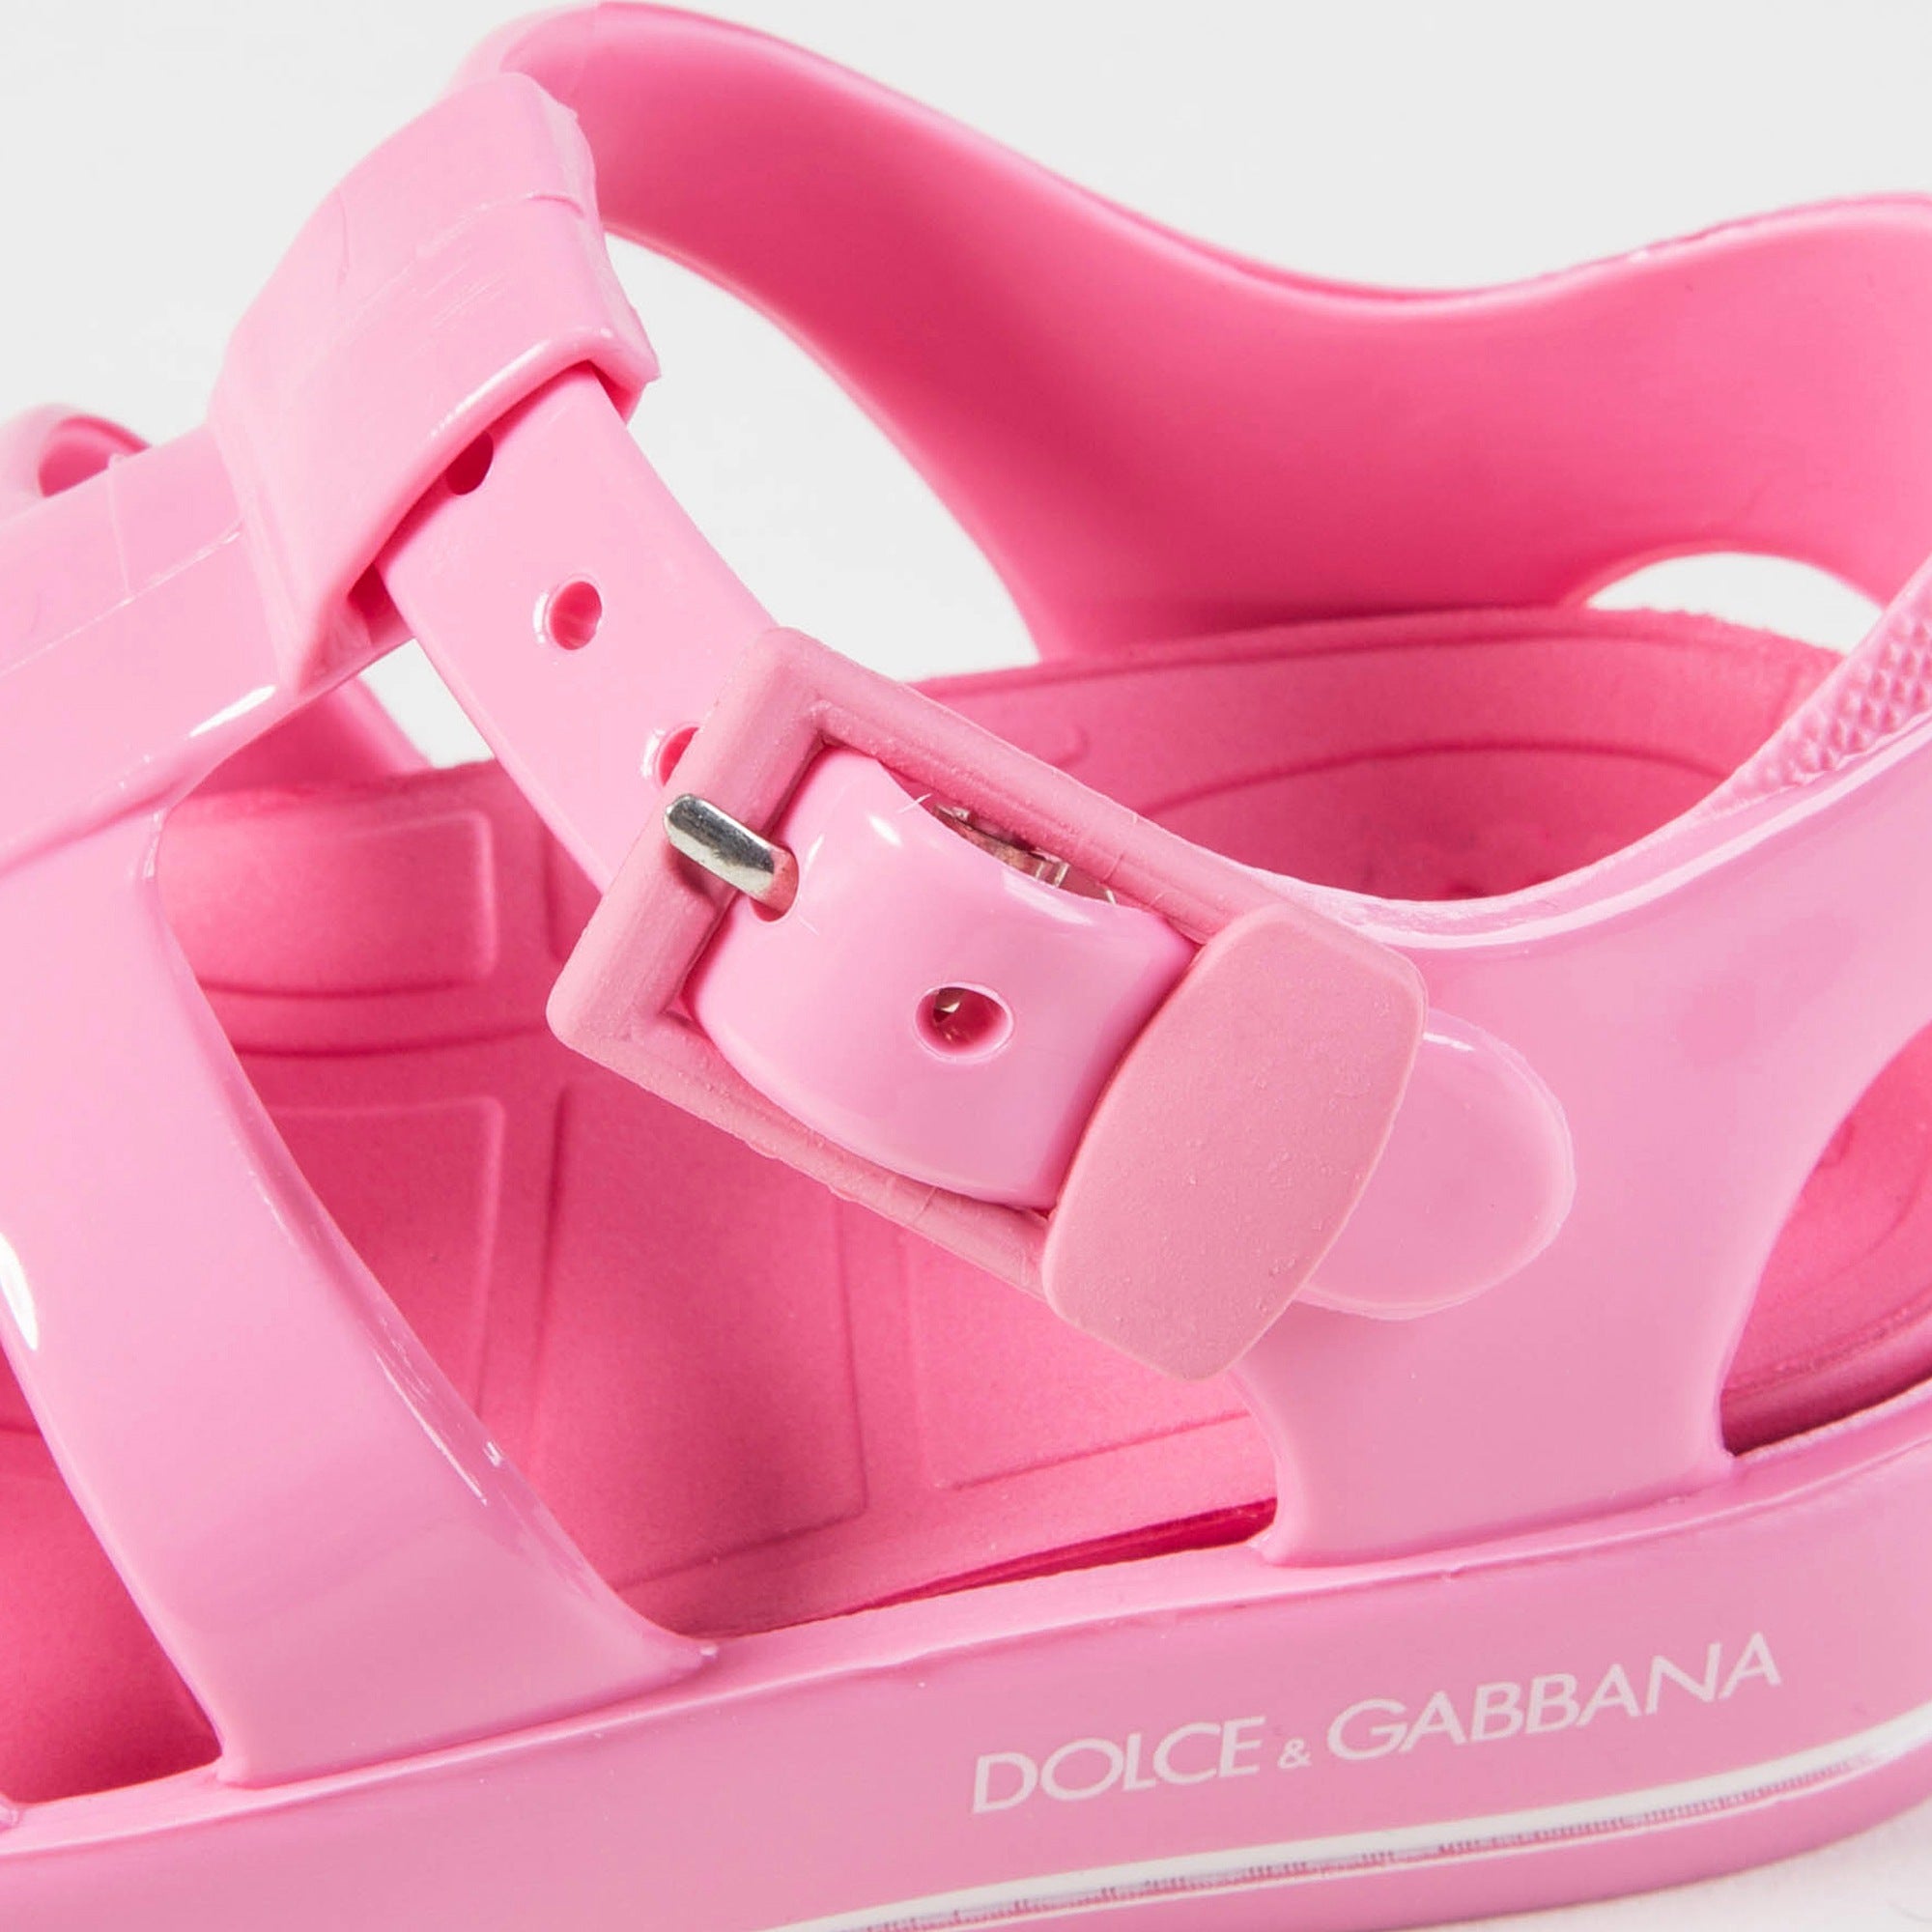 Girls Pink Sandal